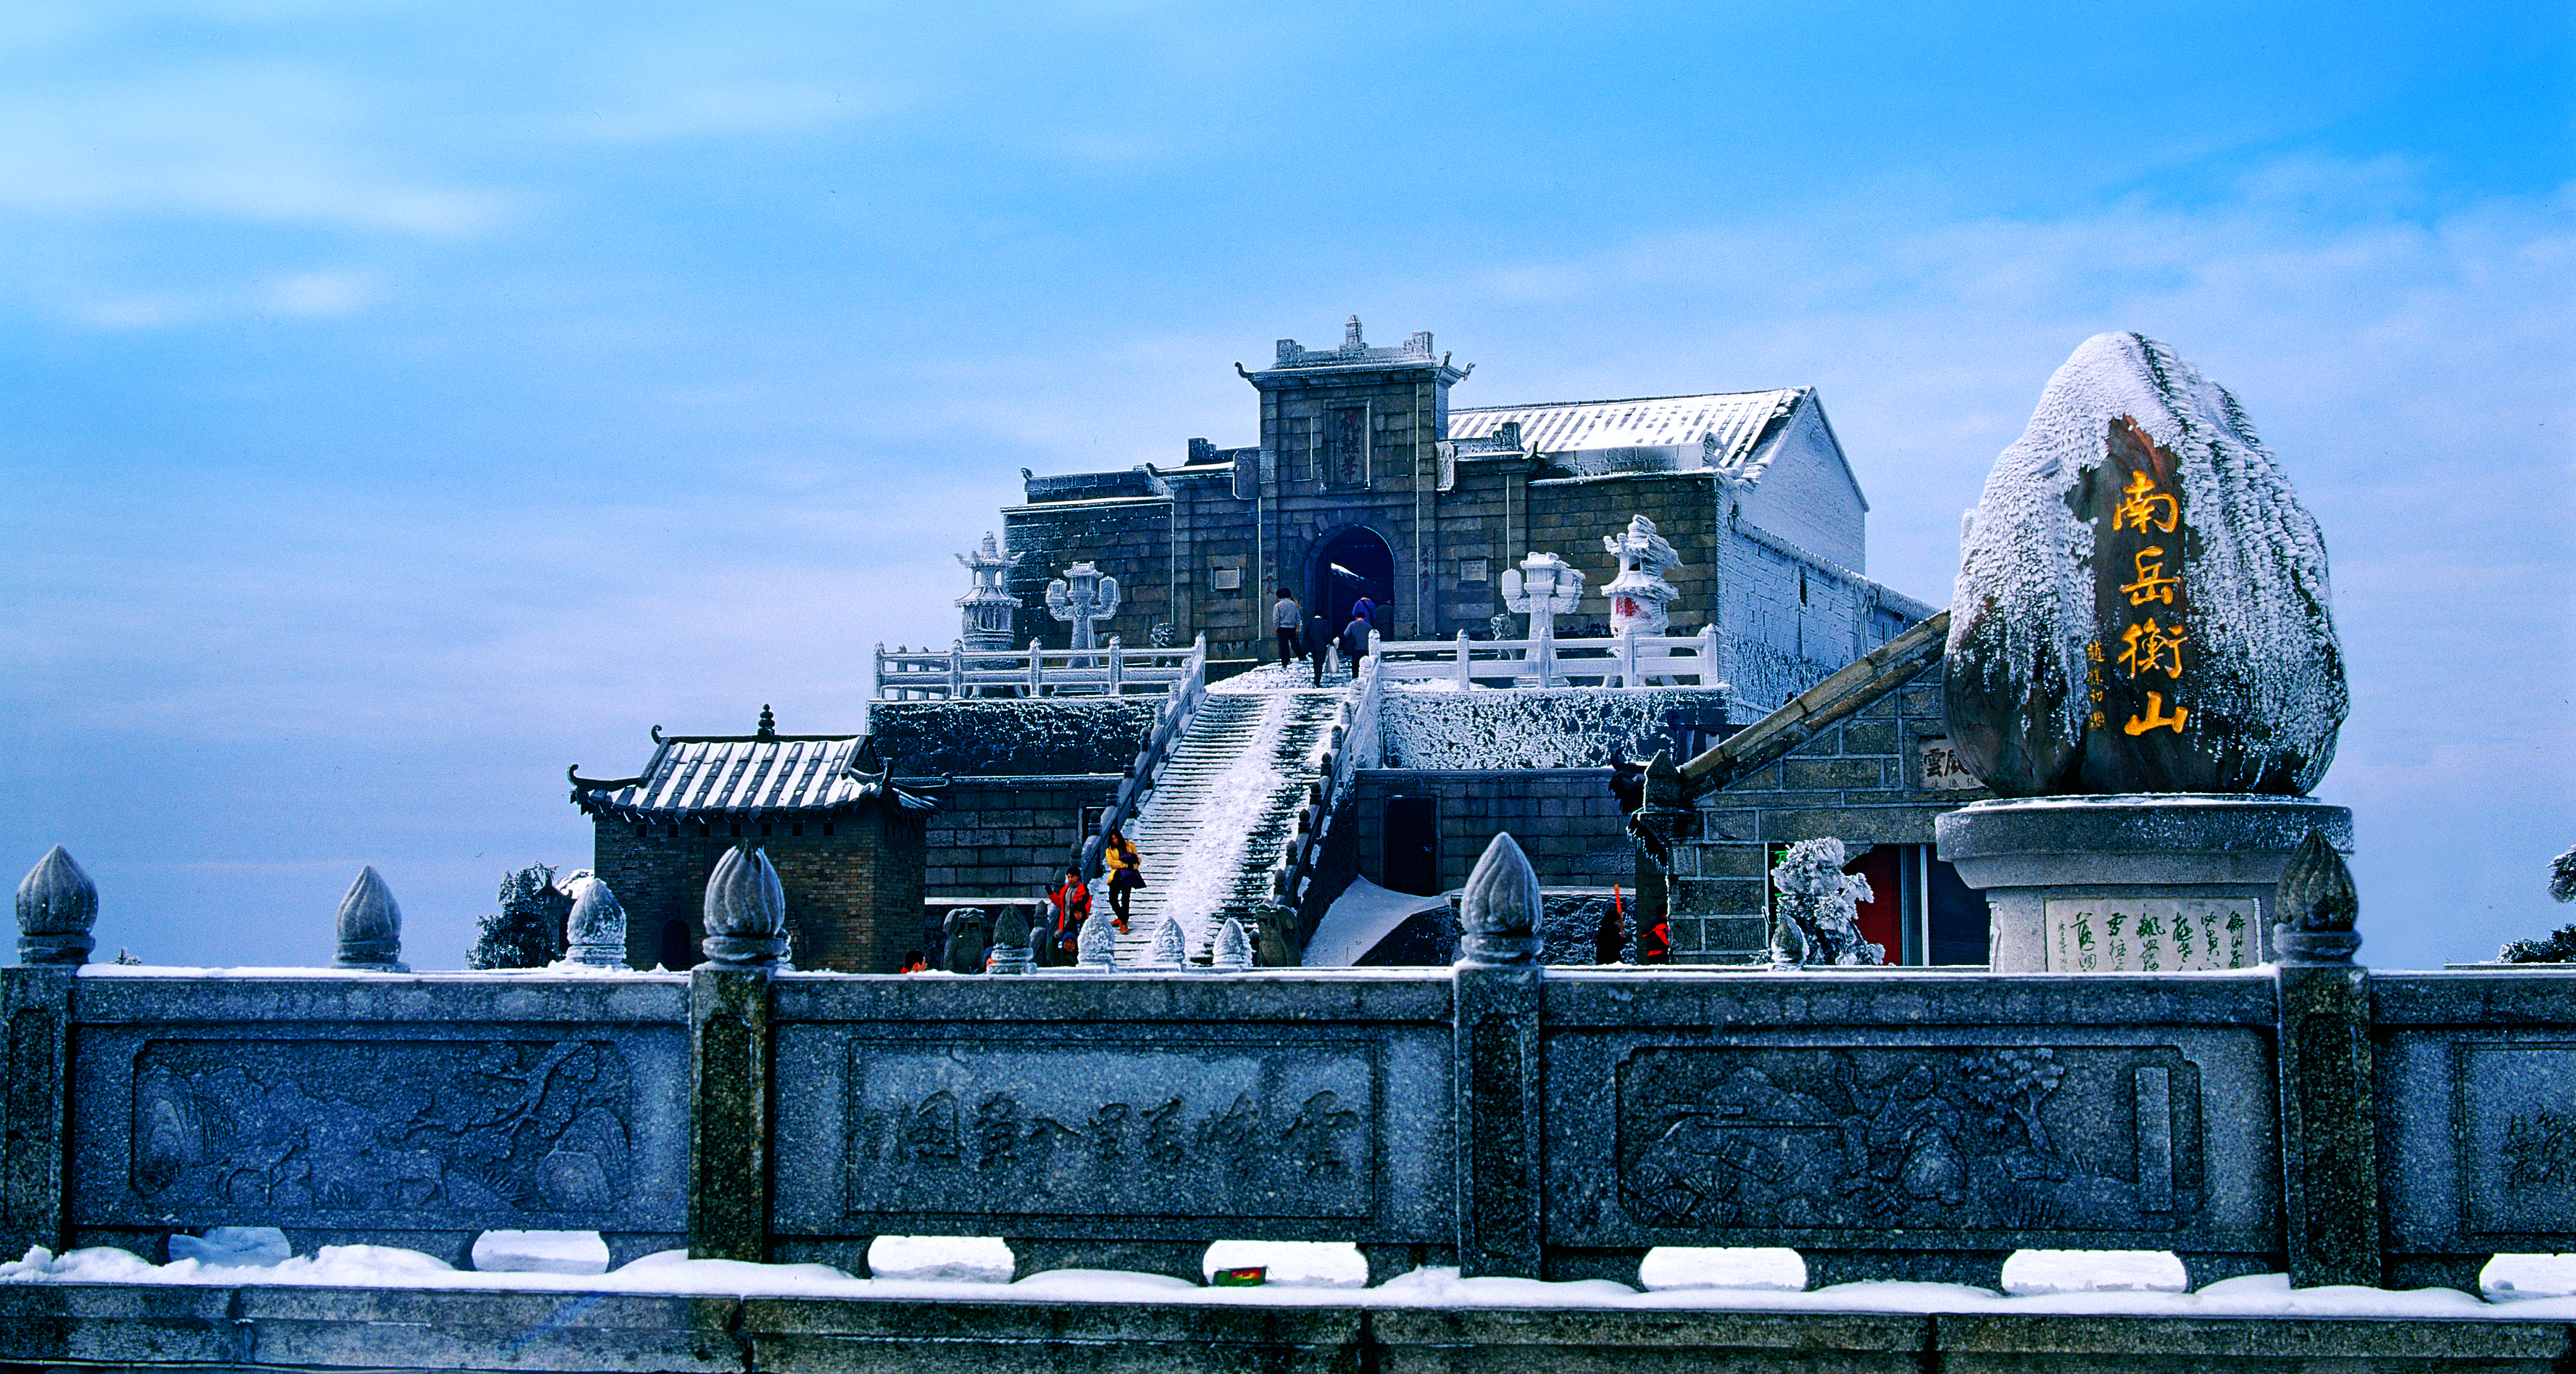 中国中部湖南省恒山祝融峰的冬季景色。  /照片提供给CGTN